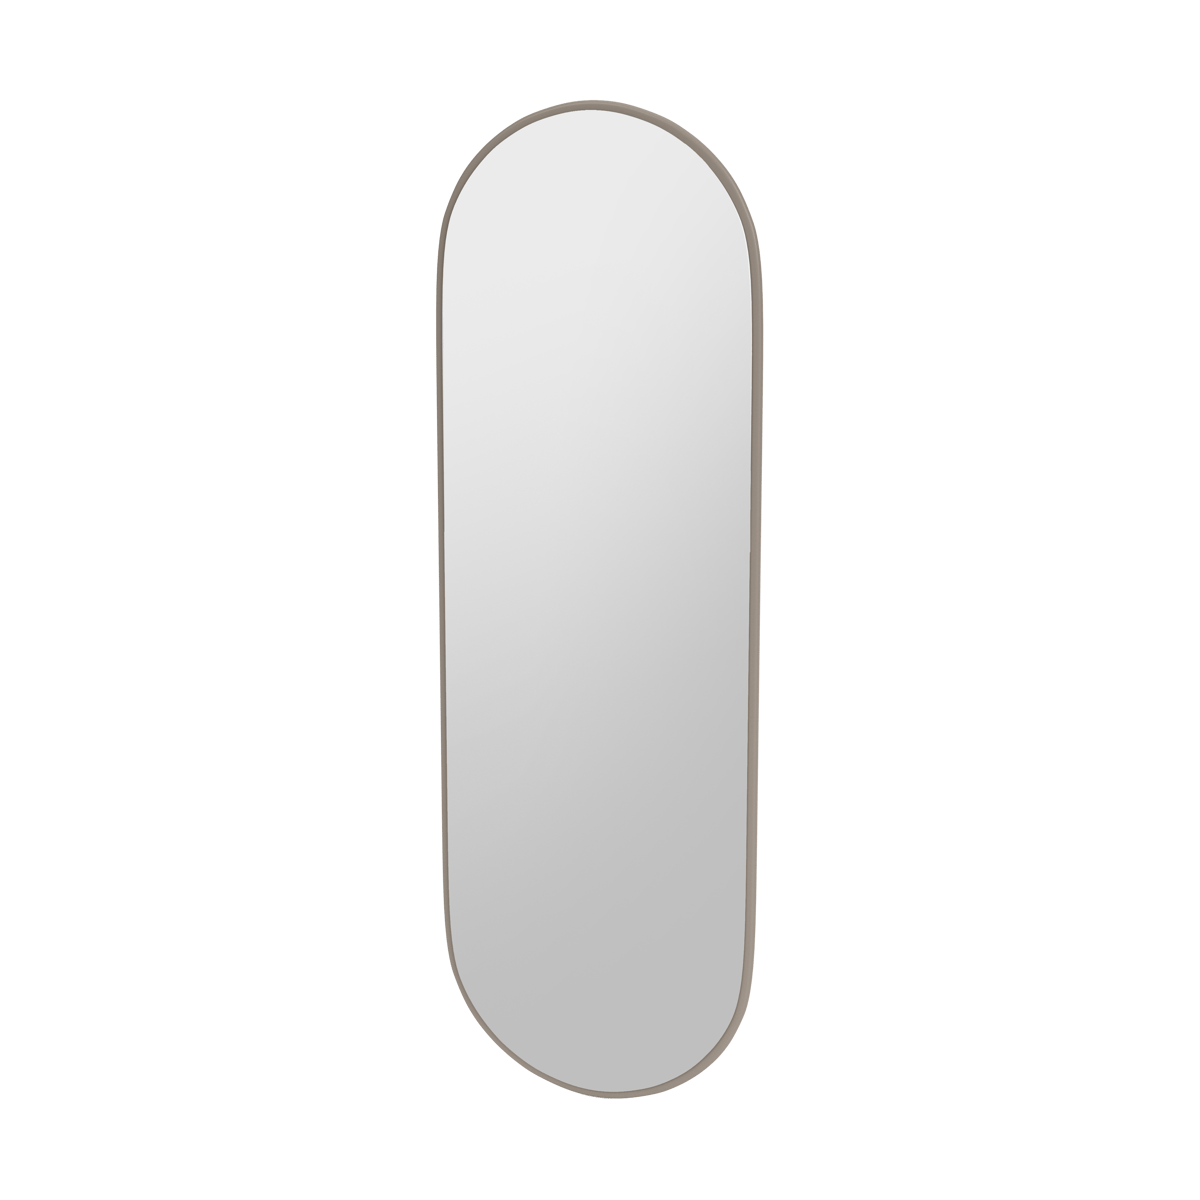 Montana FIGUUR Mirror Spiegel - SP824R Truffle